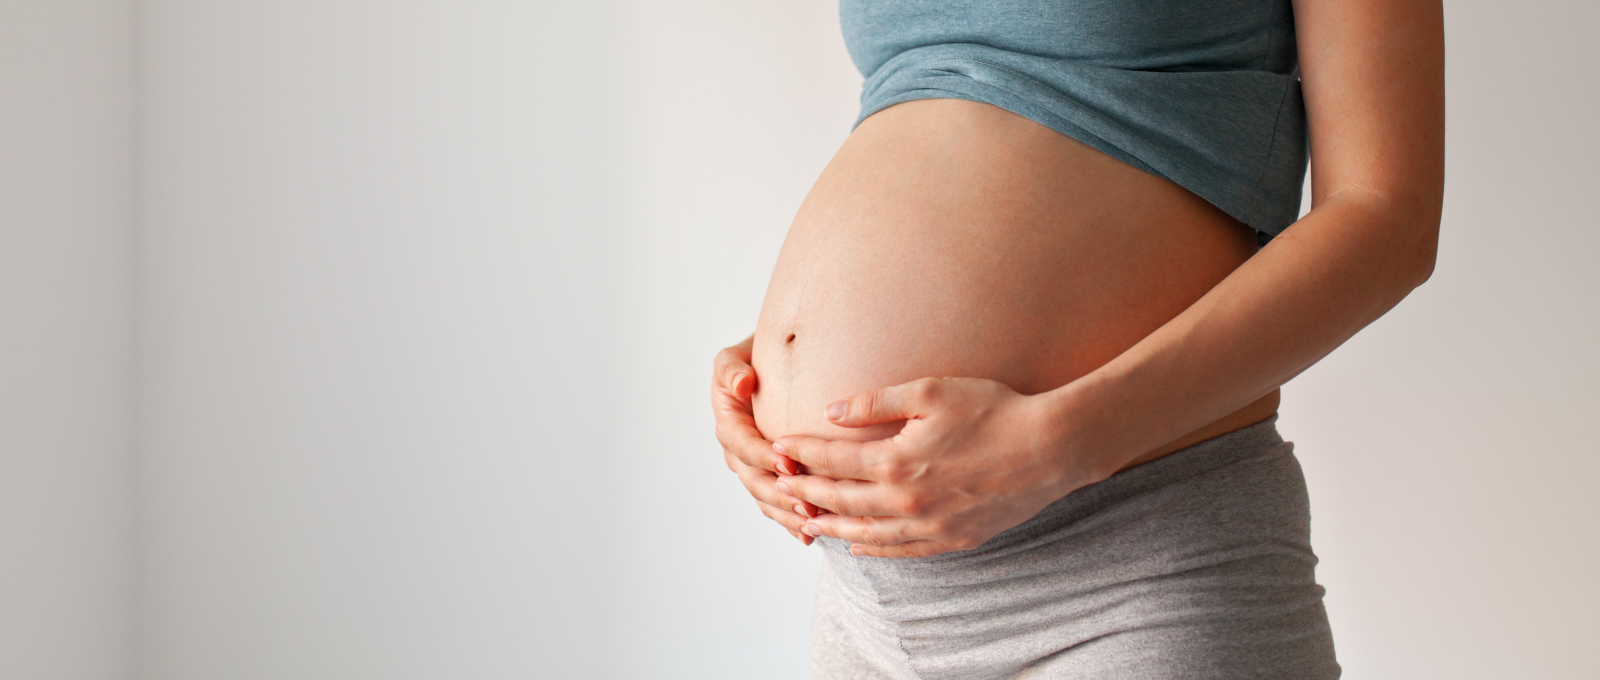 Un estudi aprofundeix en els efectes de l’exposició de les dones embarassades a substàncies químiques nocives